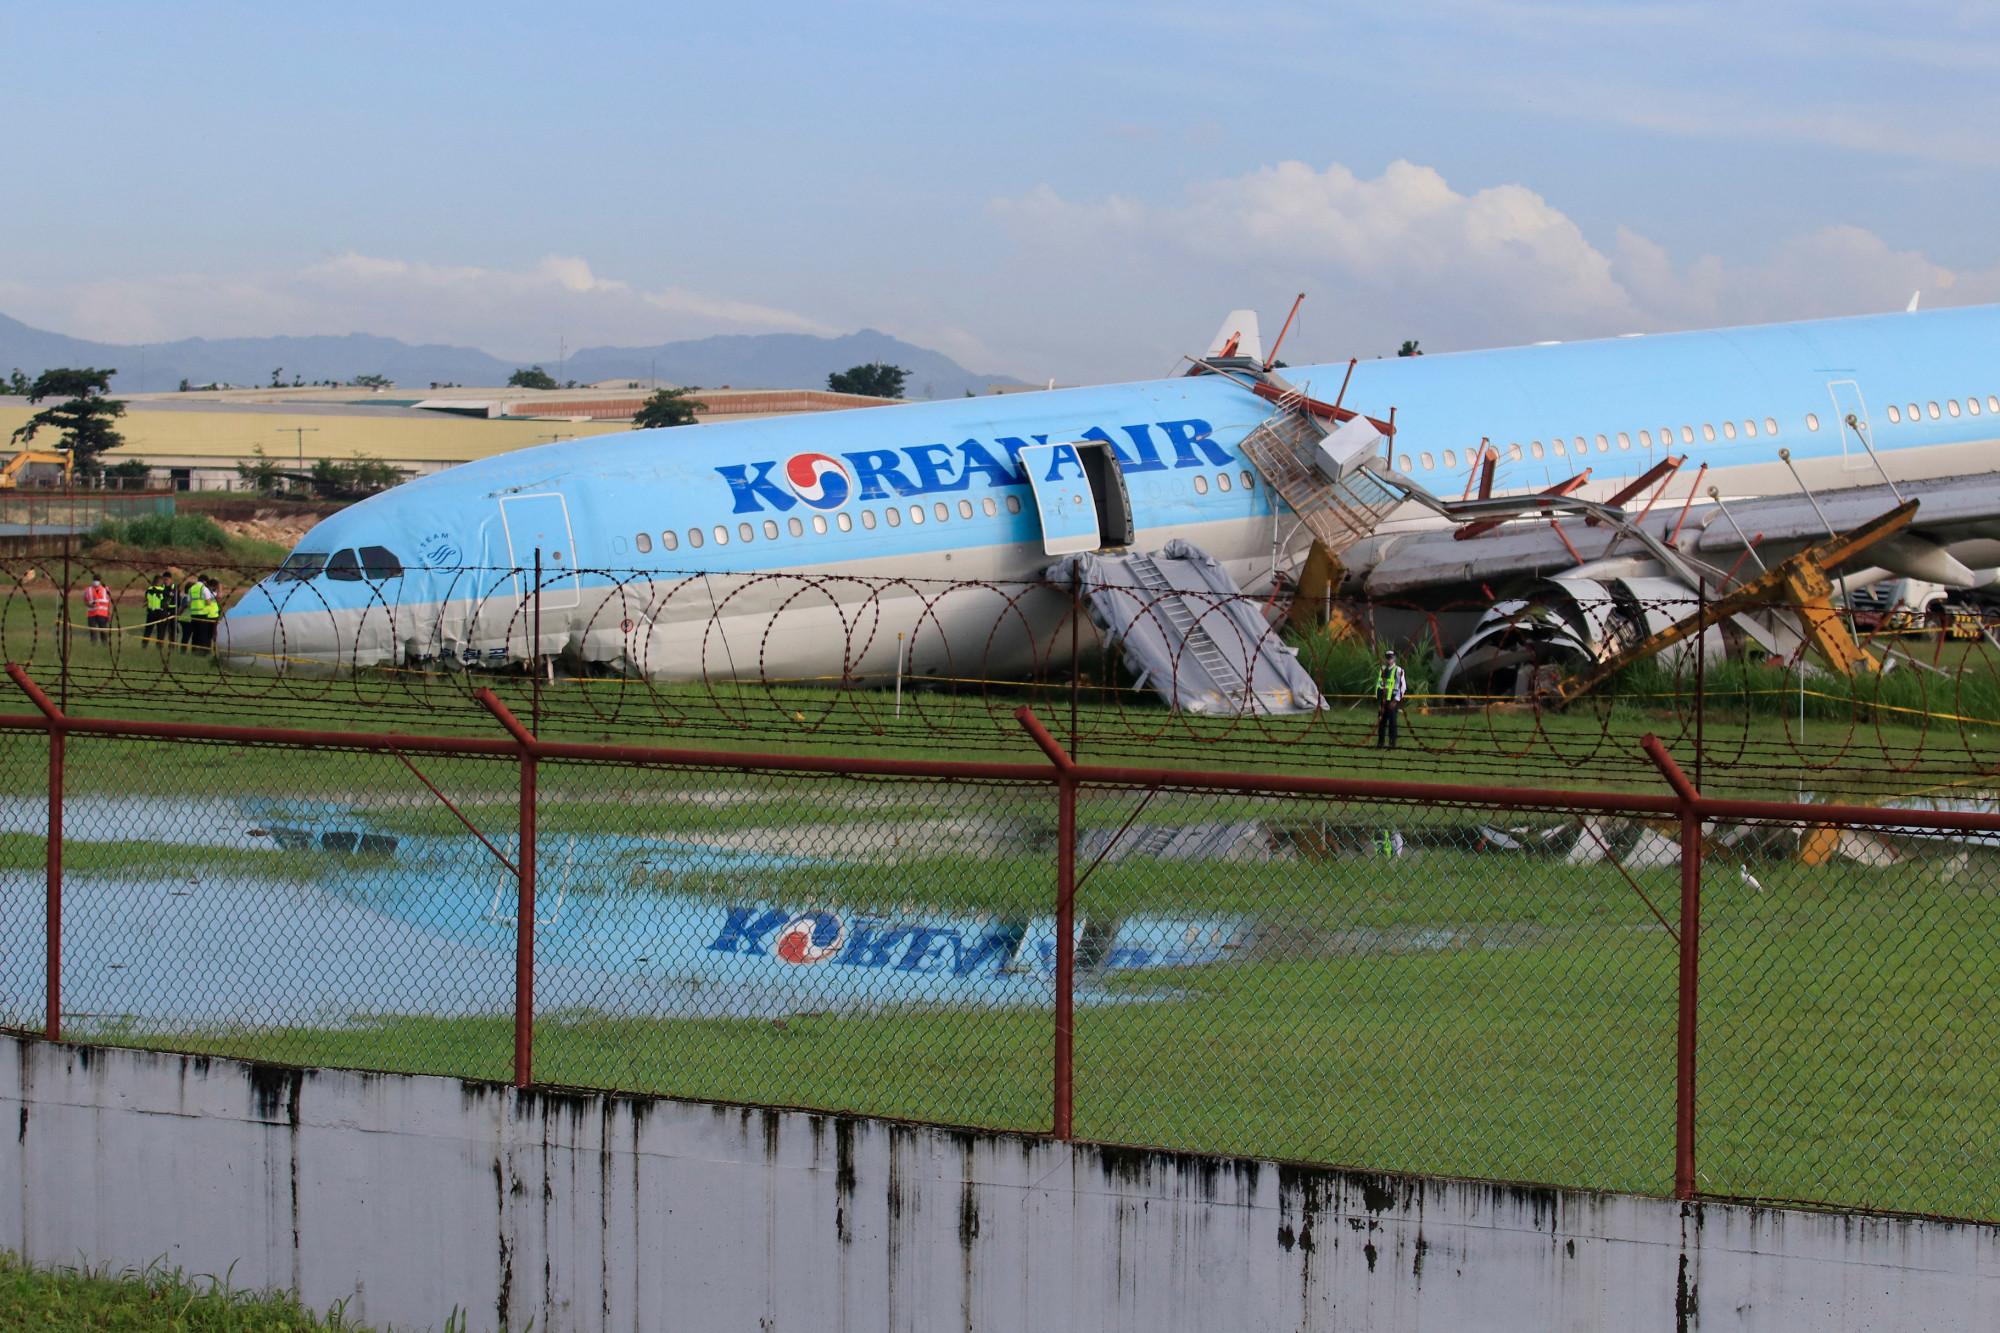 Egy koreai repülőgép a nagy eső miatt túlcsúszott a futópályán landoláskor